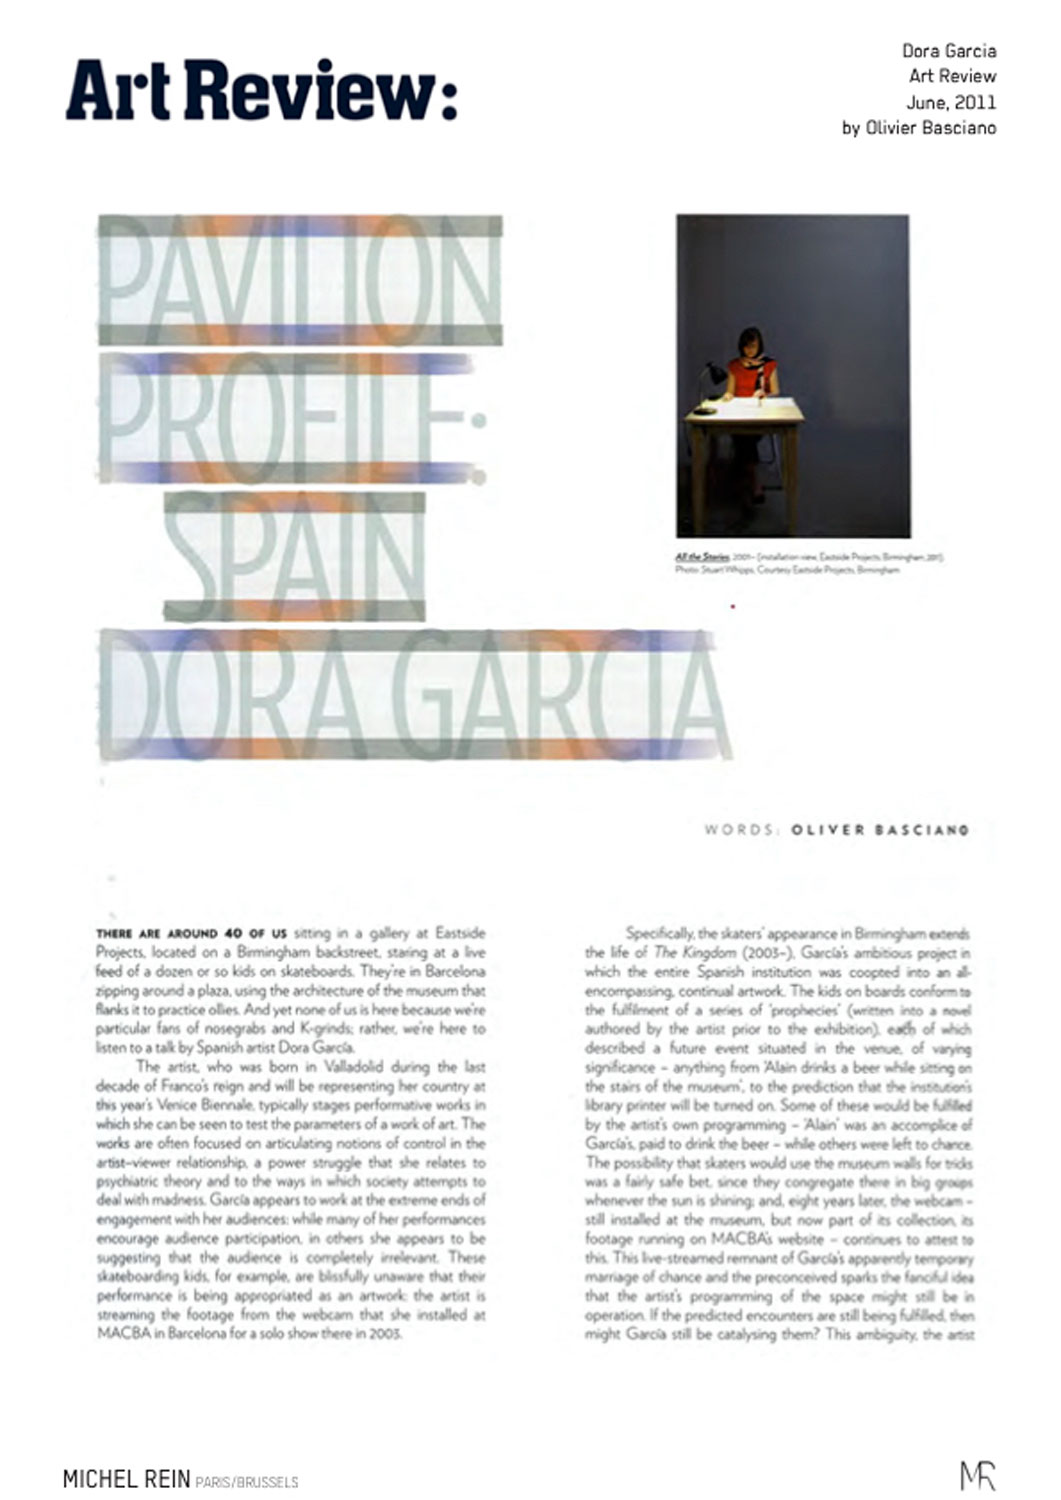 Pavilion profile : Spain, Dora Garcia - Art Review